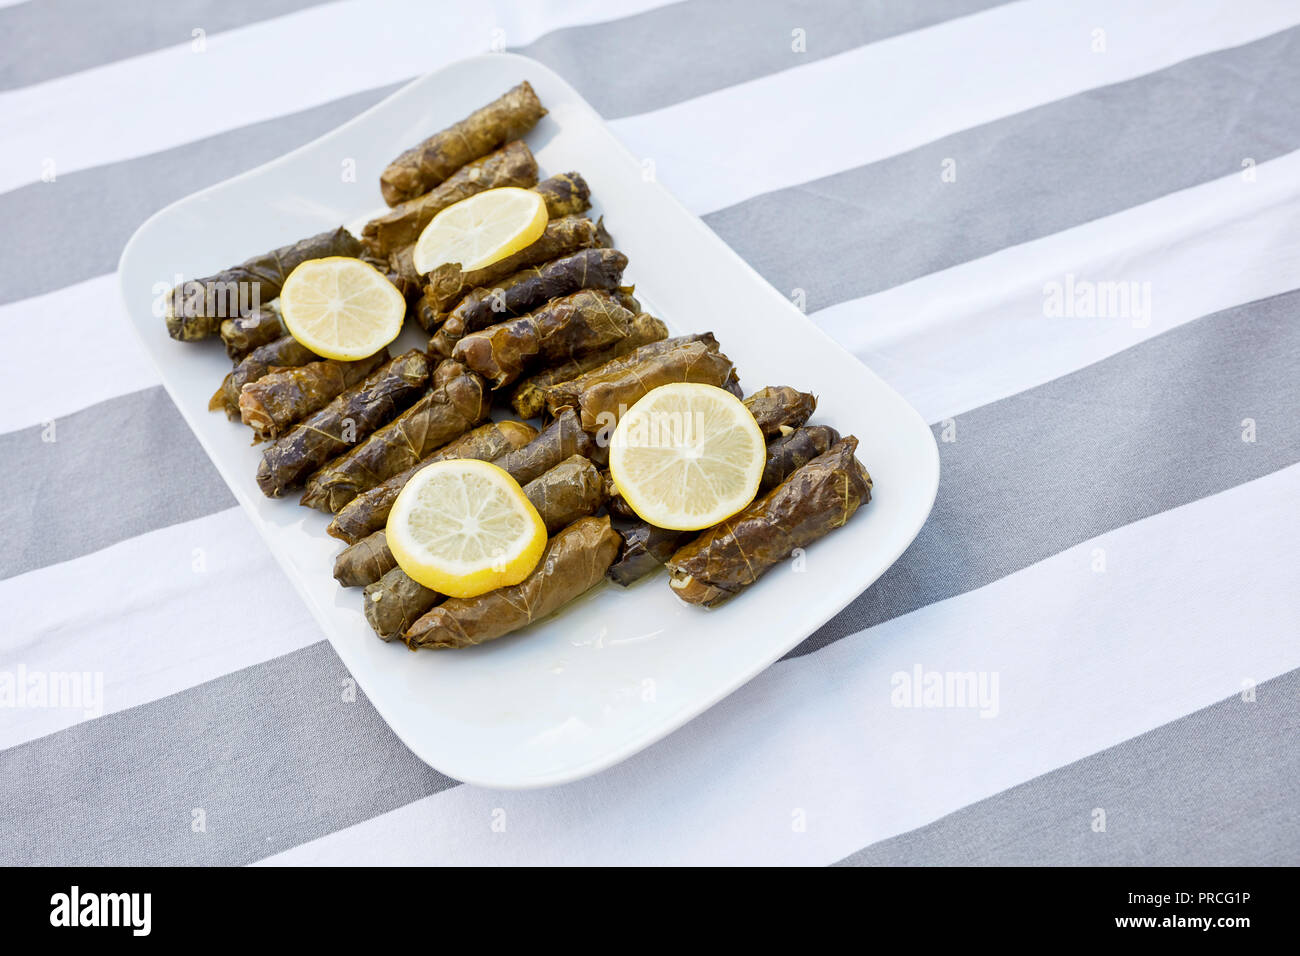 Feuilles de vigne farcies avec de l'huile d'olive et de tranches de citron servi dans une assiette de porcelaine blanche sur une nappe à rayures. Yaprak dolmasi Zeytinyagli. Banque D'Images